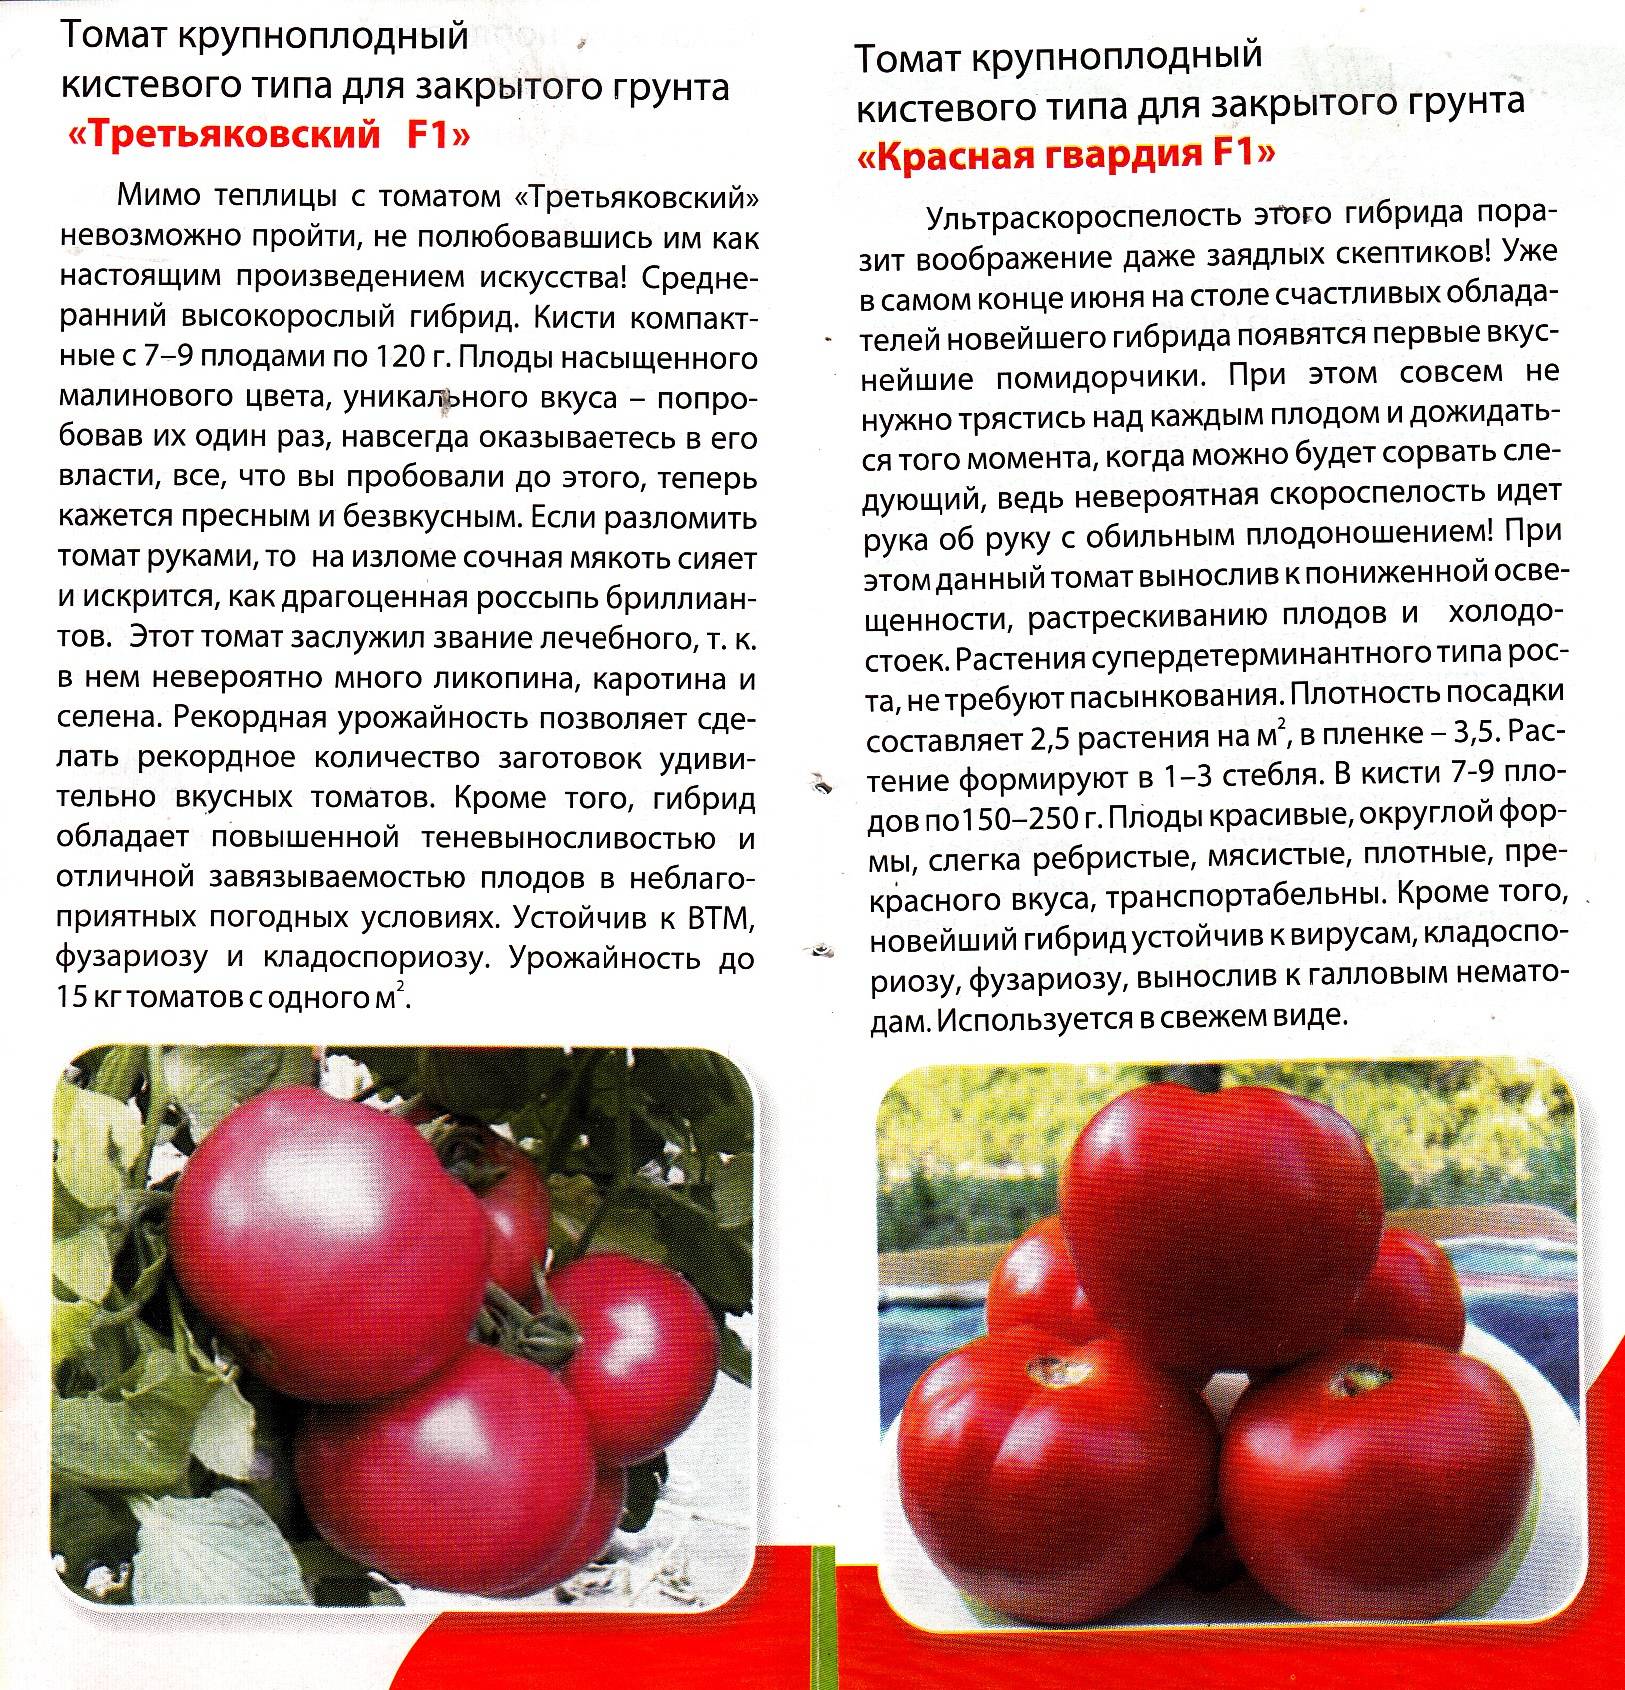 Описание сорта томата старосельского, его характеристика и урожайность